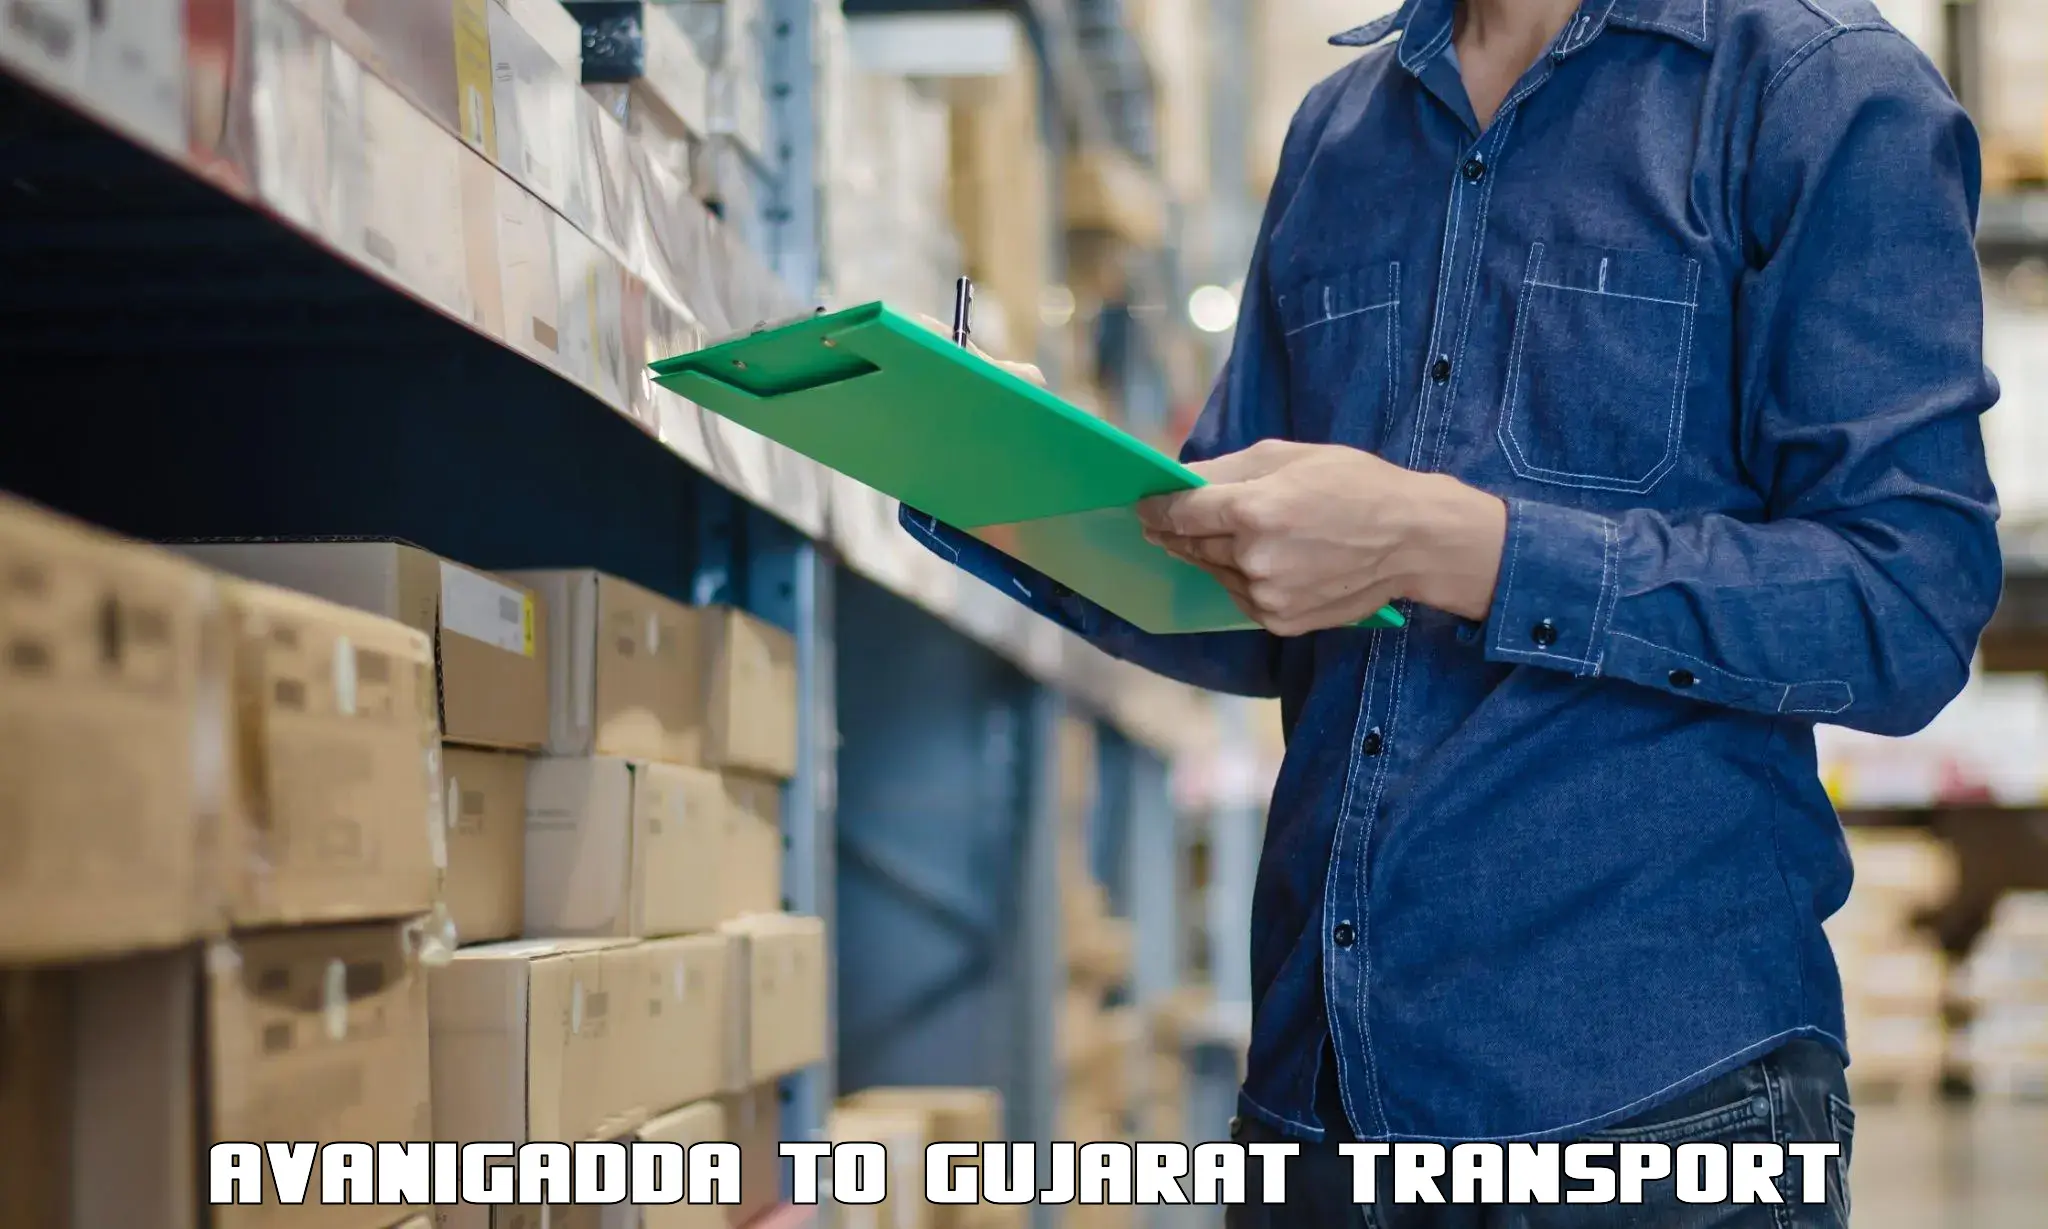 Shipping partner Avanigadda to Gujarat